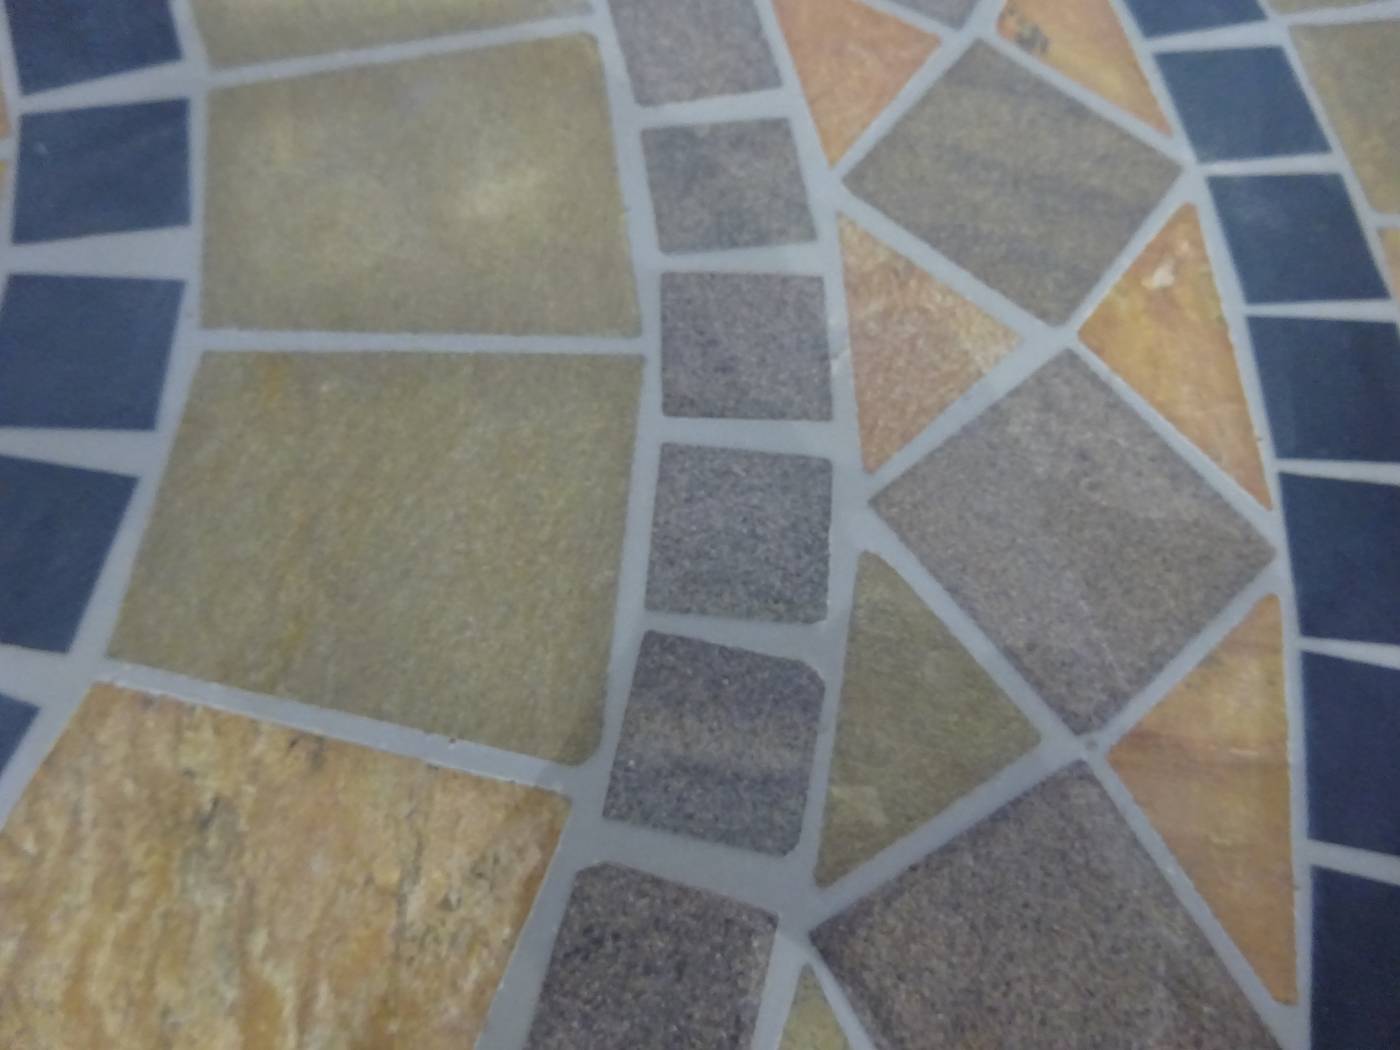 Set Mosaico Leila/Ampurias-100/4 - Conjunto de forja color gris: 1 mesa redonda con panel mosaico de marmol + 4 sillones de ratán sintético + 4 cojines